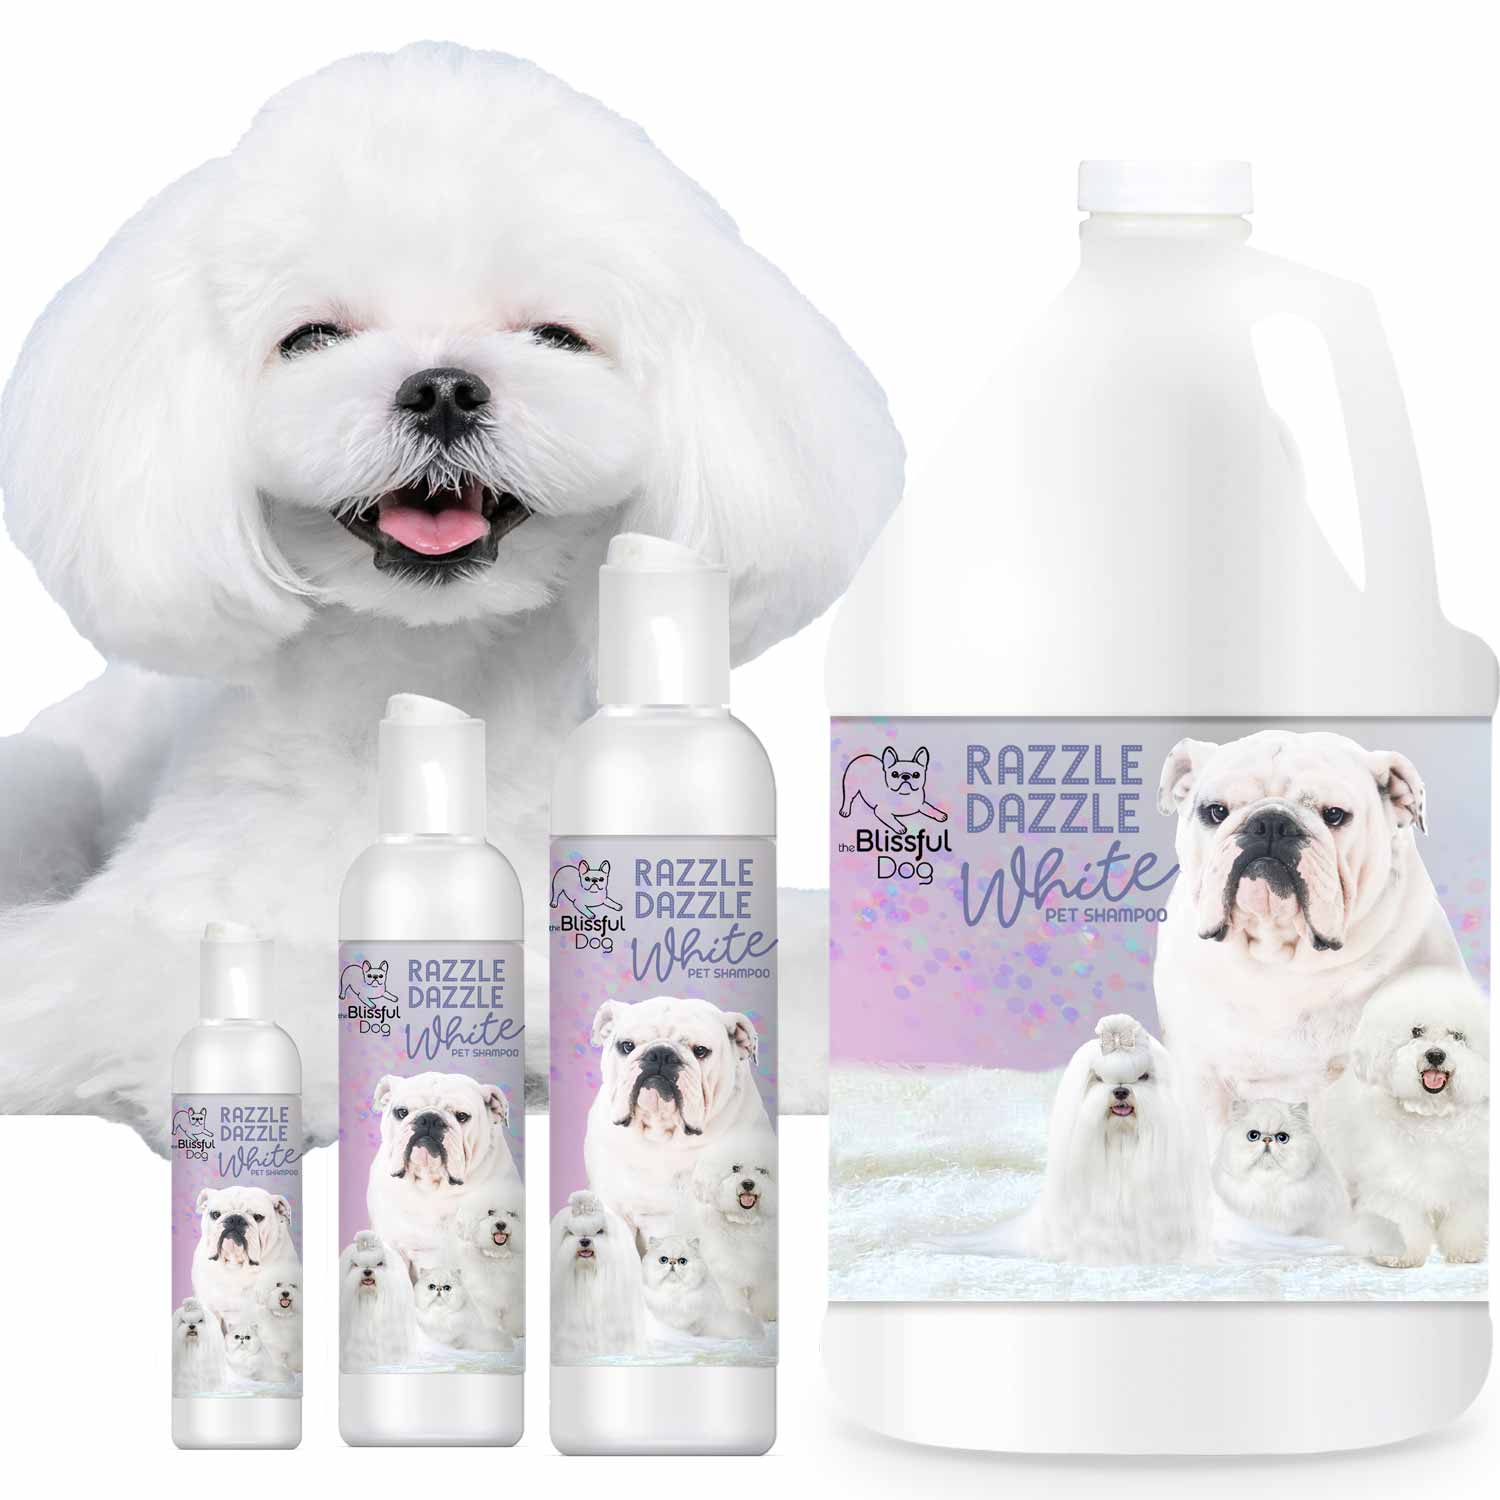 Razzle Dazzle White Pet Shampoo